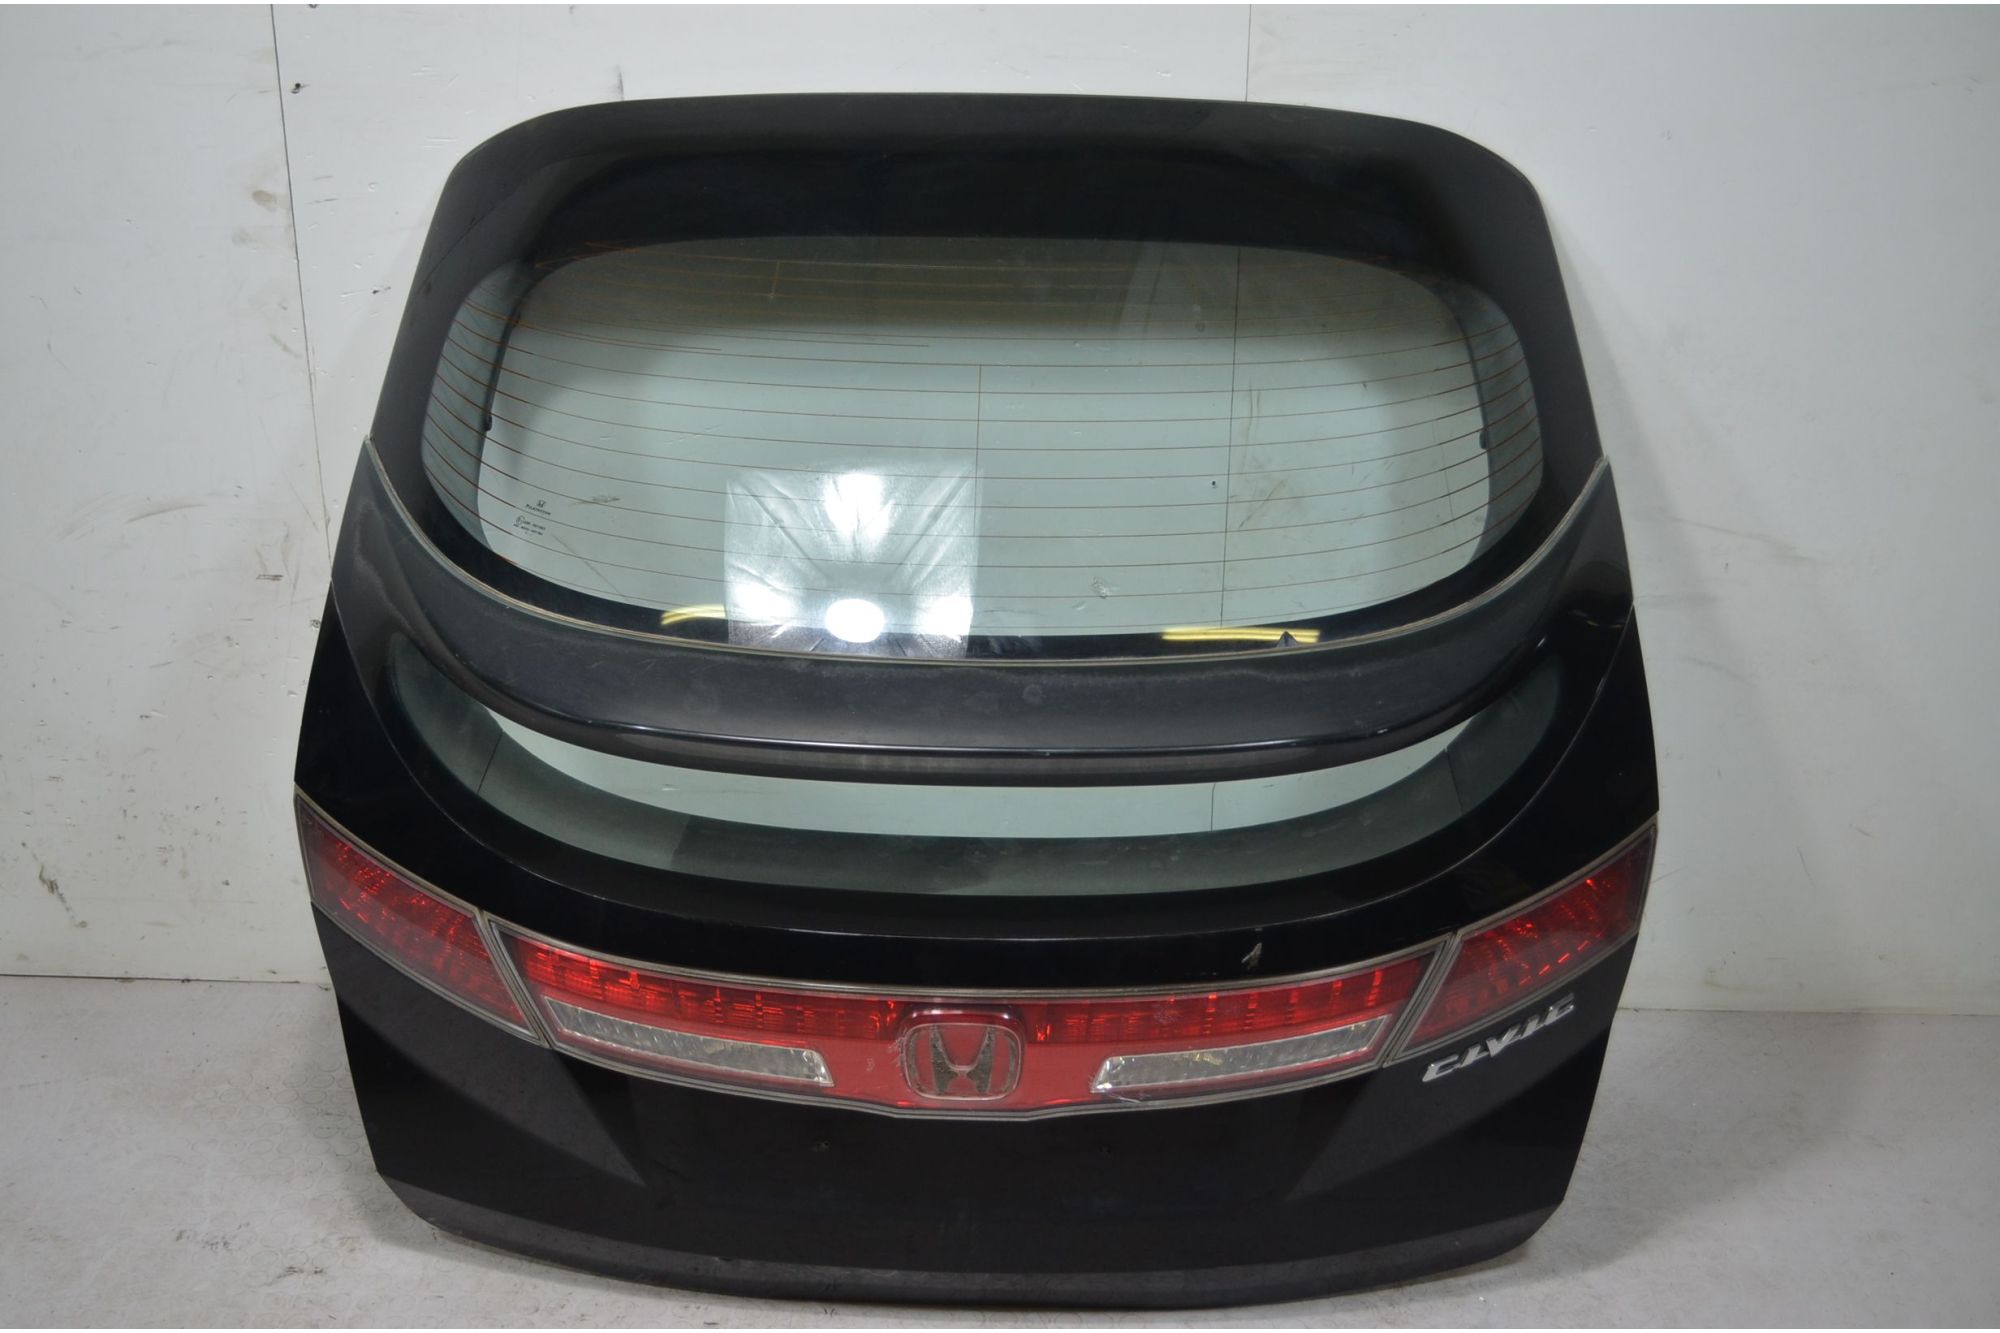 Portellone Bagagliaio Posteriore Honda Civic VIII dal 2006 al 2011 Cod 68100SMGE01ZZ  1714136860399